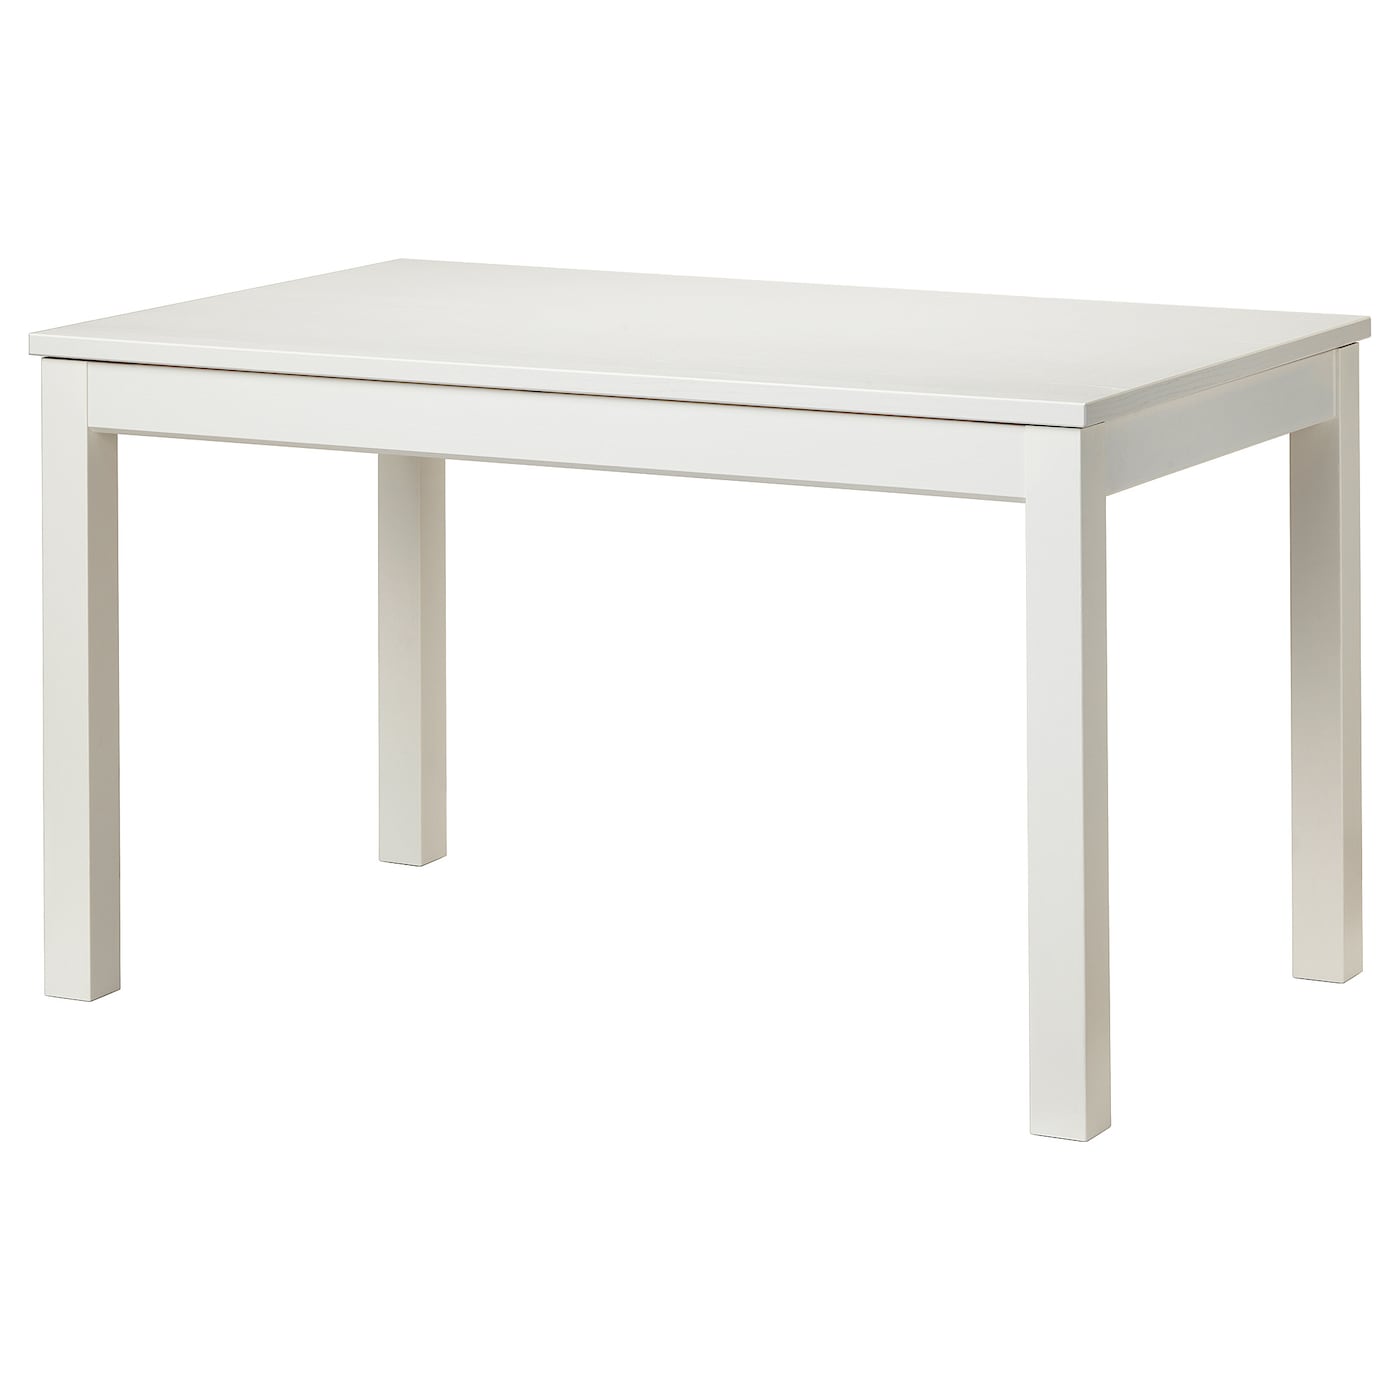 Раздвижной обеденный стол - IKEA LANEBERG, 190/130х80х75 см, коричневый, ЛАНЕБЕРГ ИКЕА